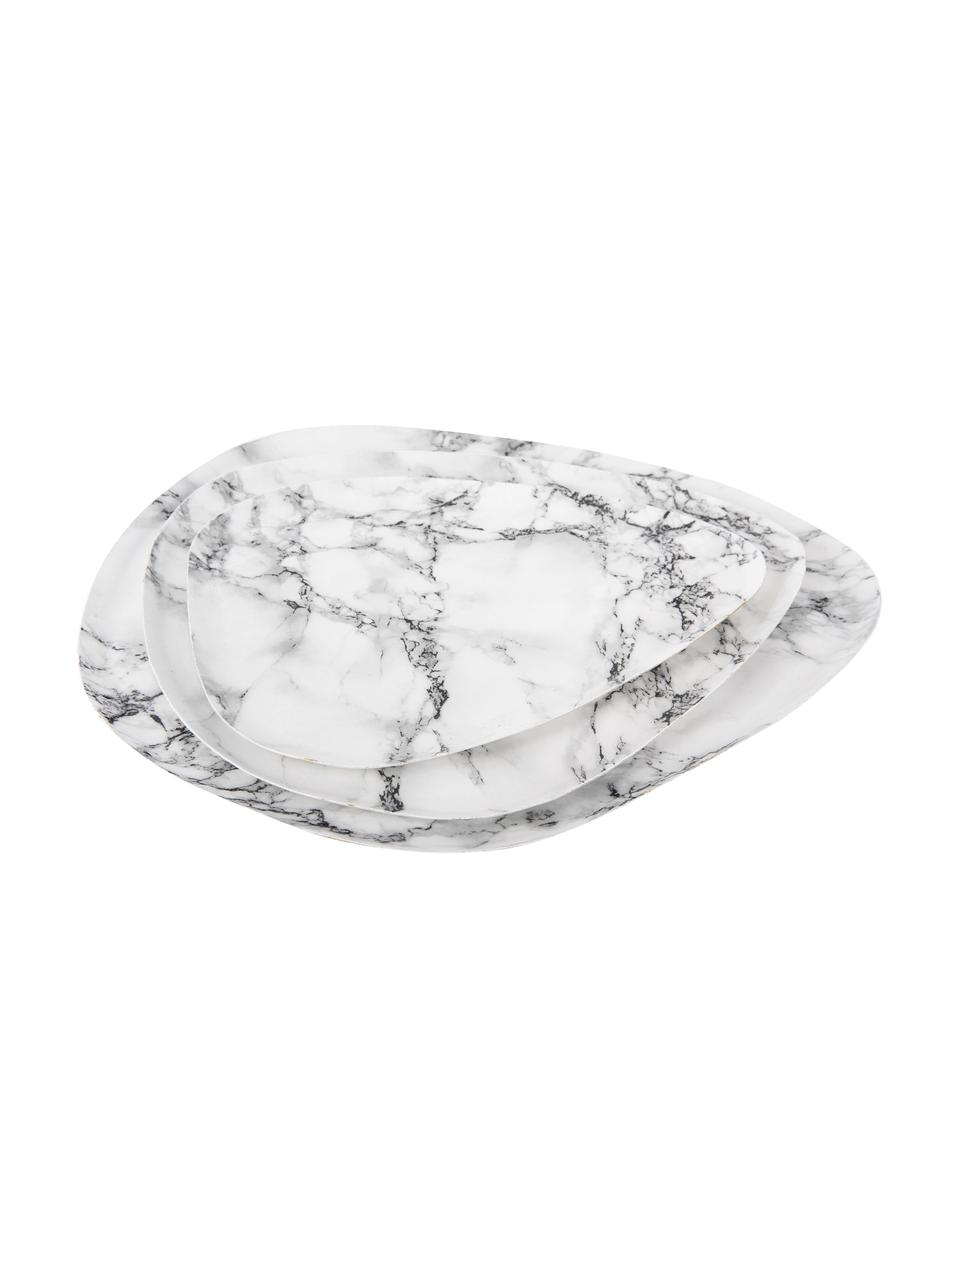 Vassoio decorativo effetto marmo Look , lung. 25 x larg. 19 cm, Metallo rivestito, Bianco marmorizzato, Lung. 25 x Larg. 19 cm